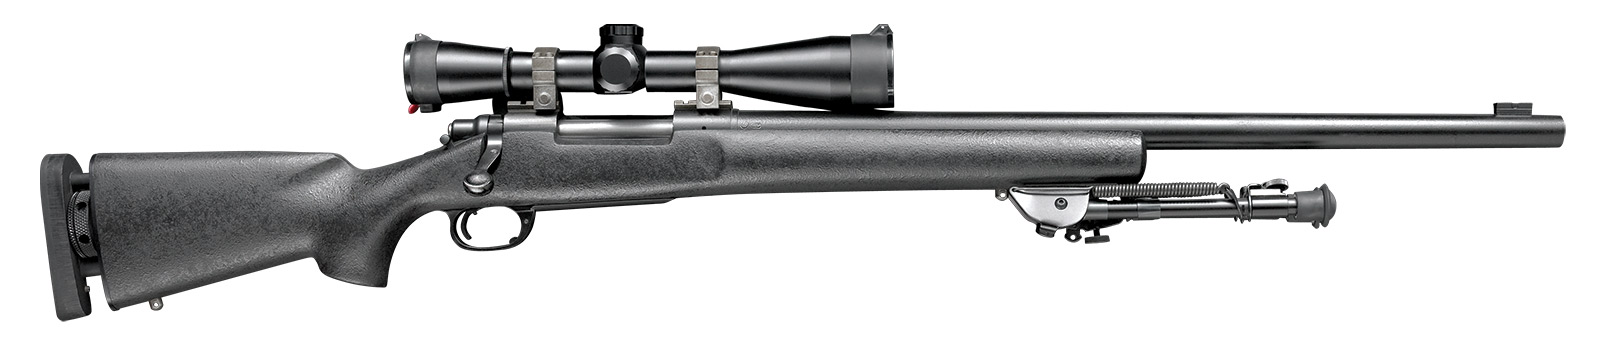 M24, 7.62x51mm NATO/.300 Winchester Magnum